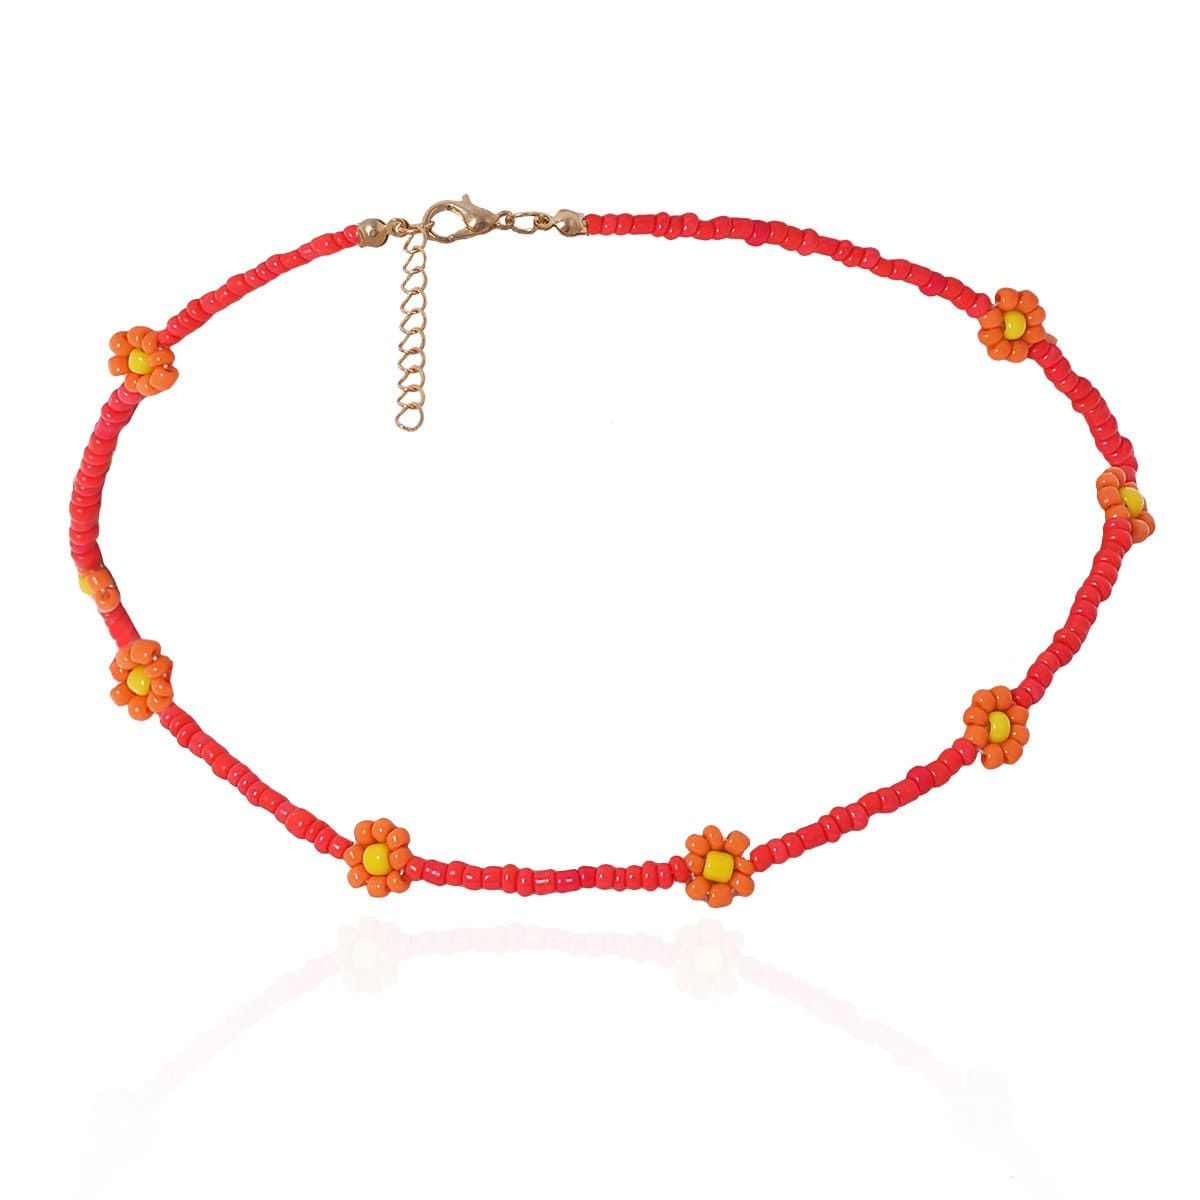 Damzel, Beaded Ribbon Choker Necklace - Jewelry by Sande Gene